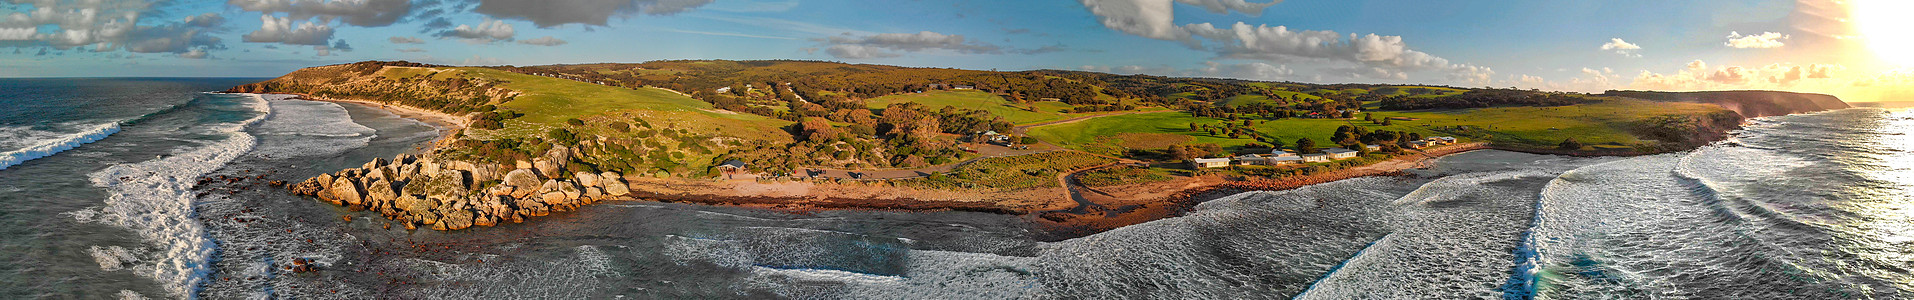 澳大利亚Kangaroo岛海滩全景空中观察曲线娱乐岩石海岸线旅行海景蓝色乐趣海洋海岸图片